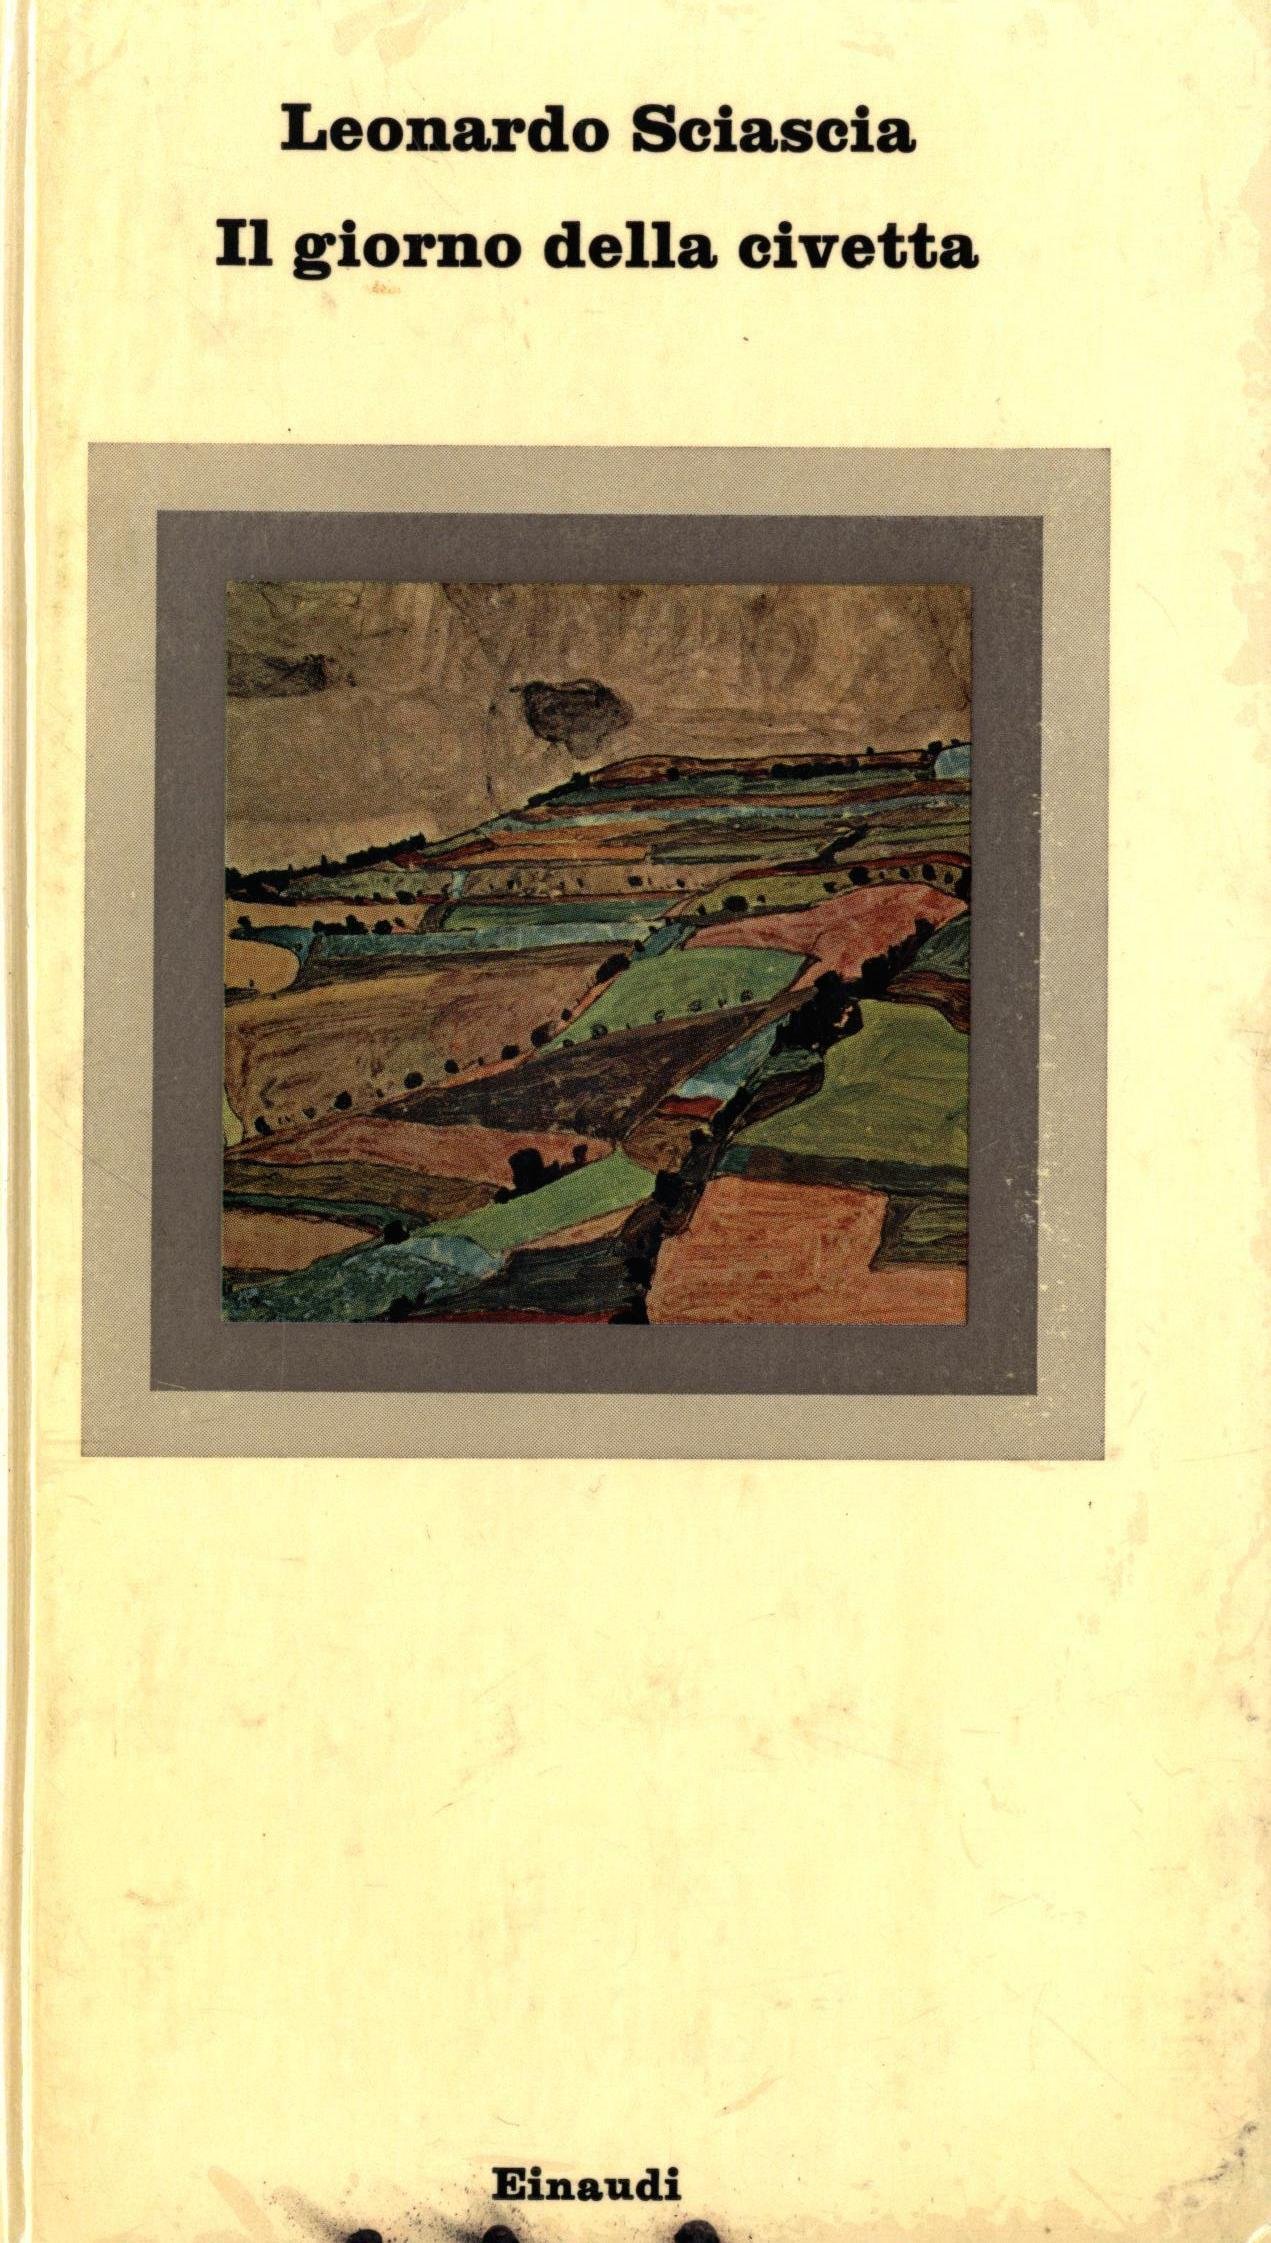 A book cover of "Il Giorno della Civetta"